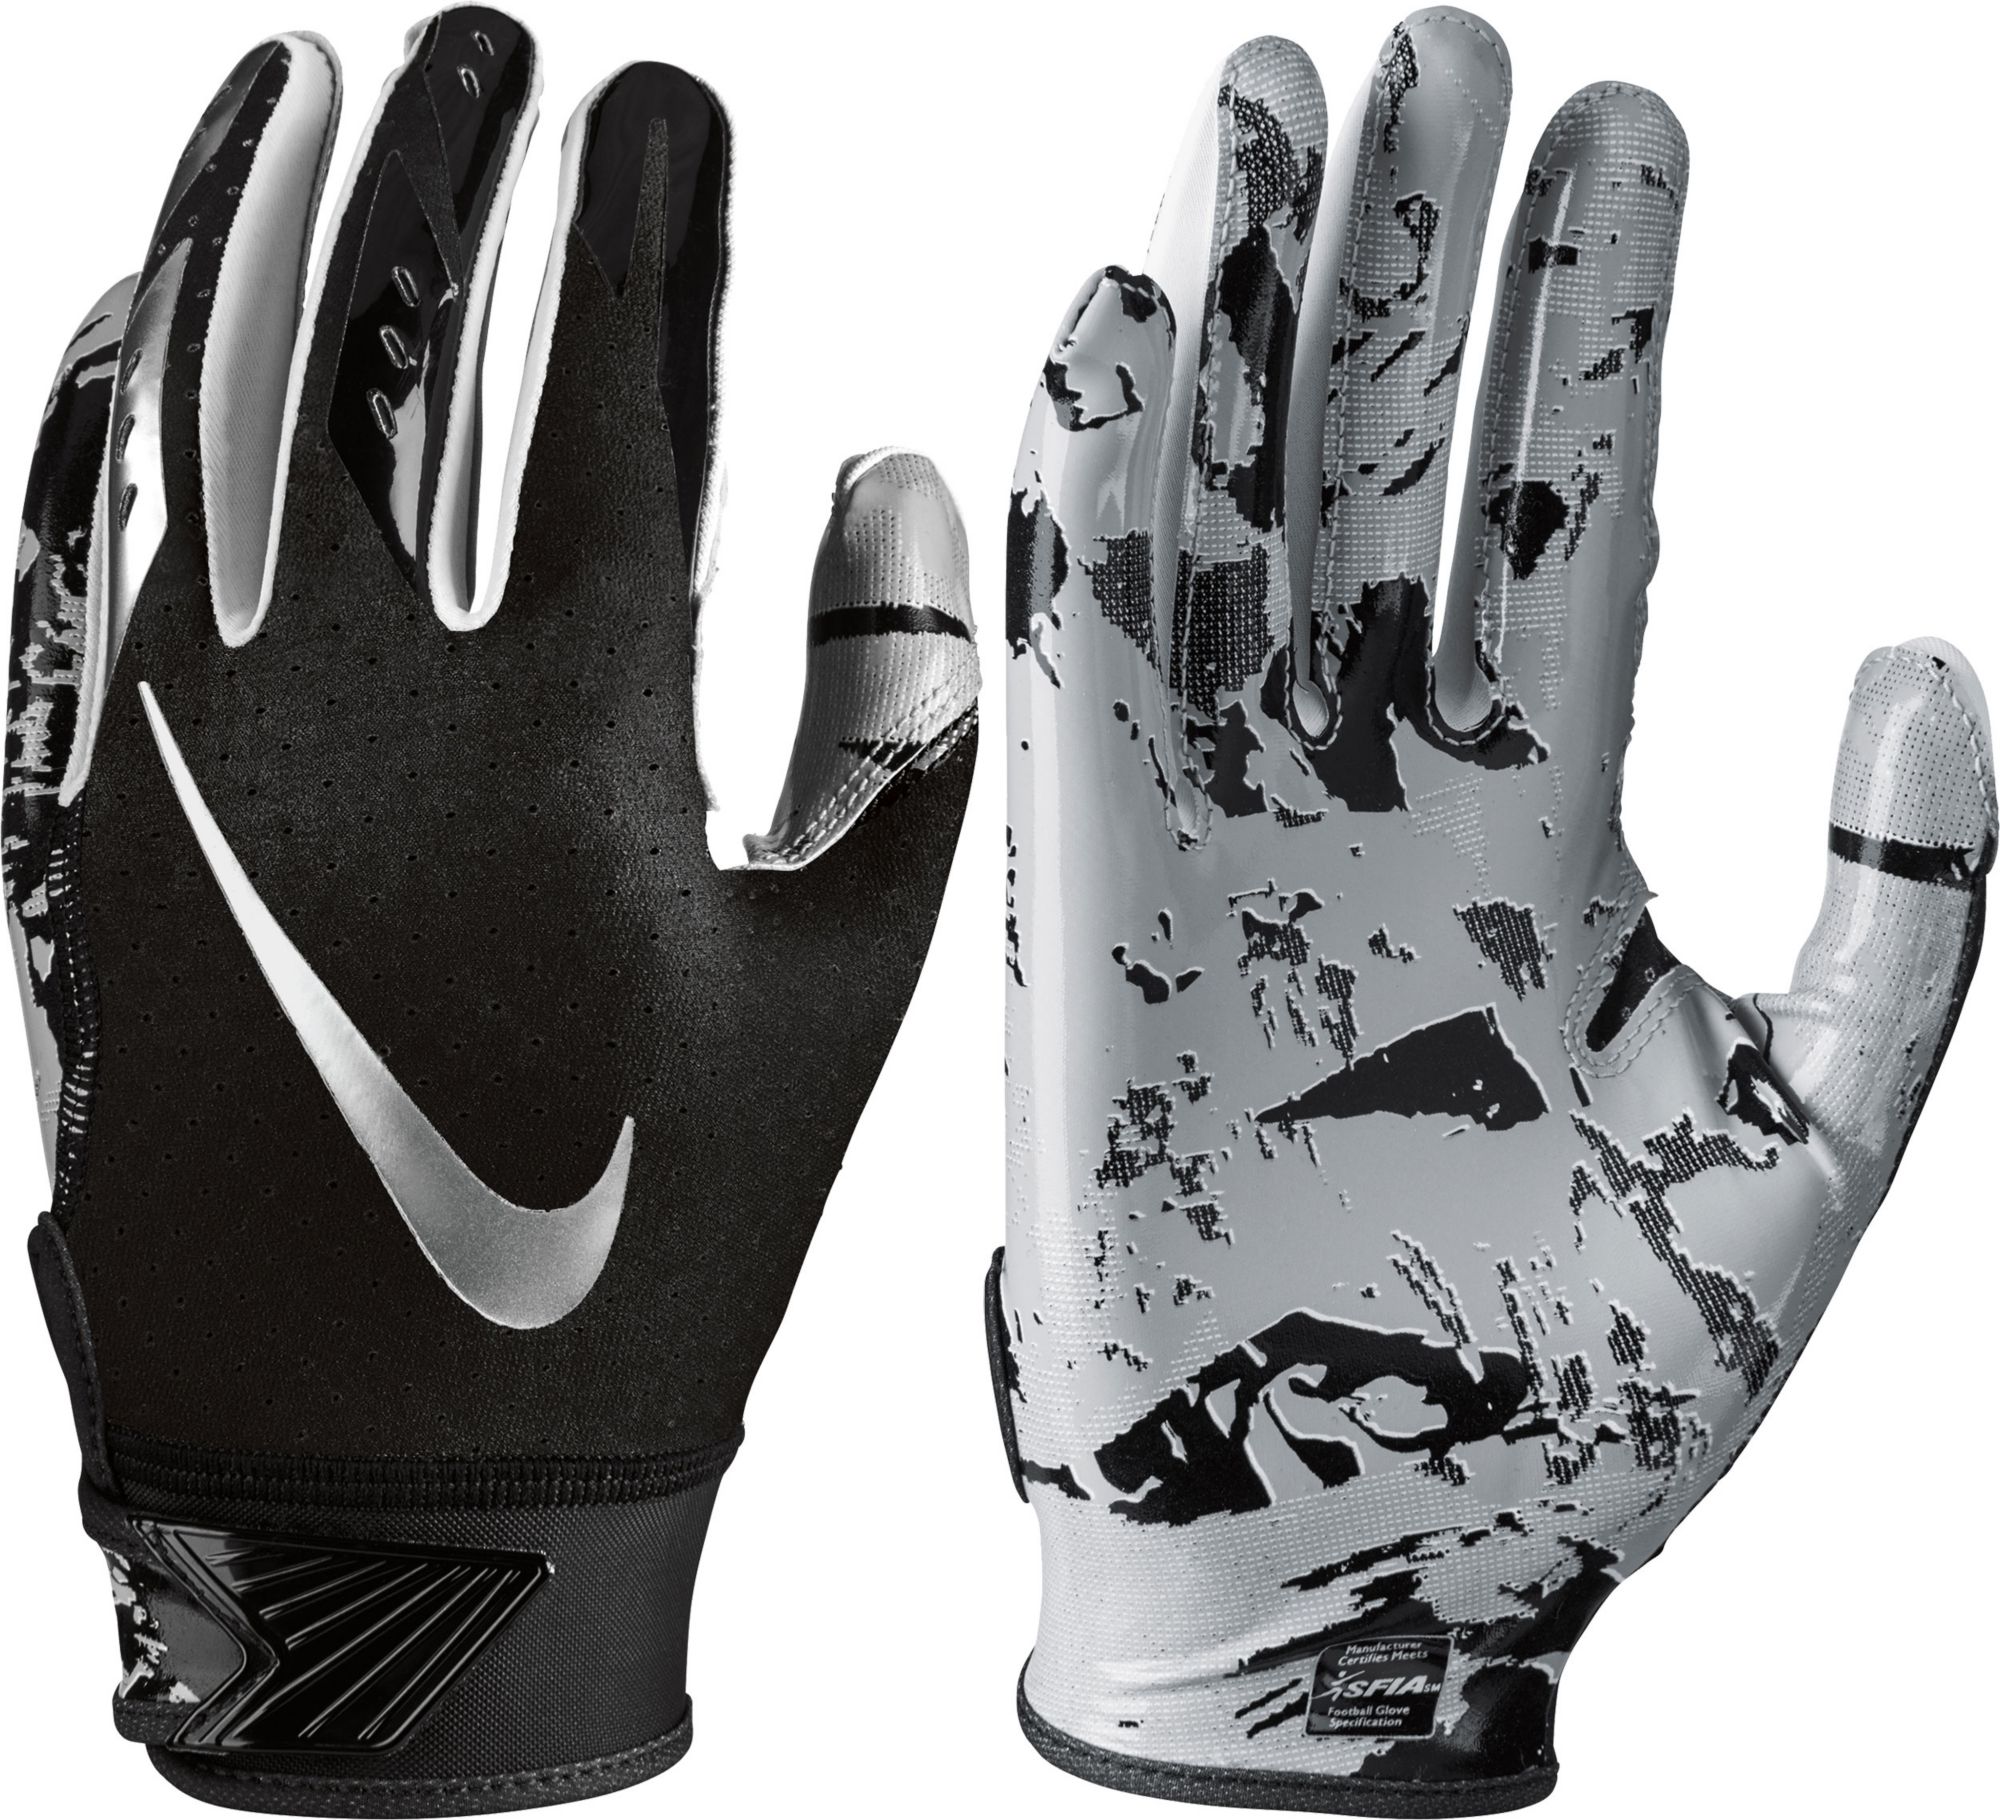 nike vapor jet 5.0 football gloves